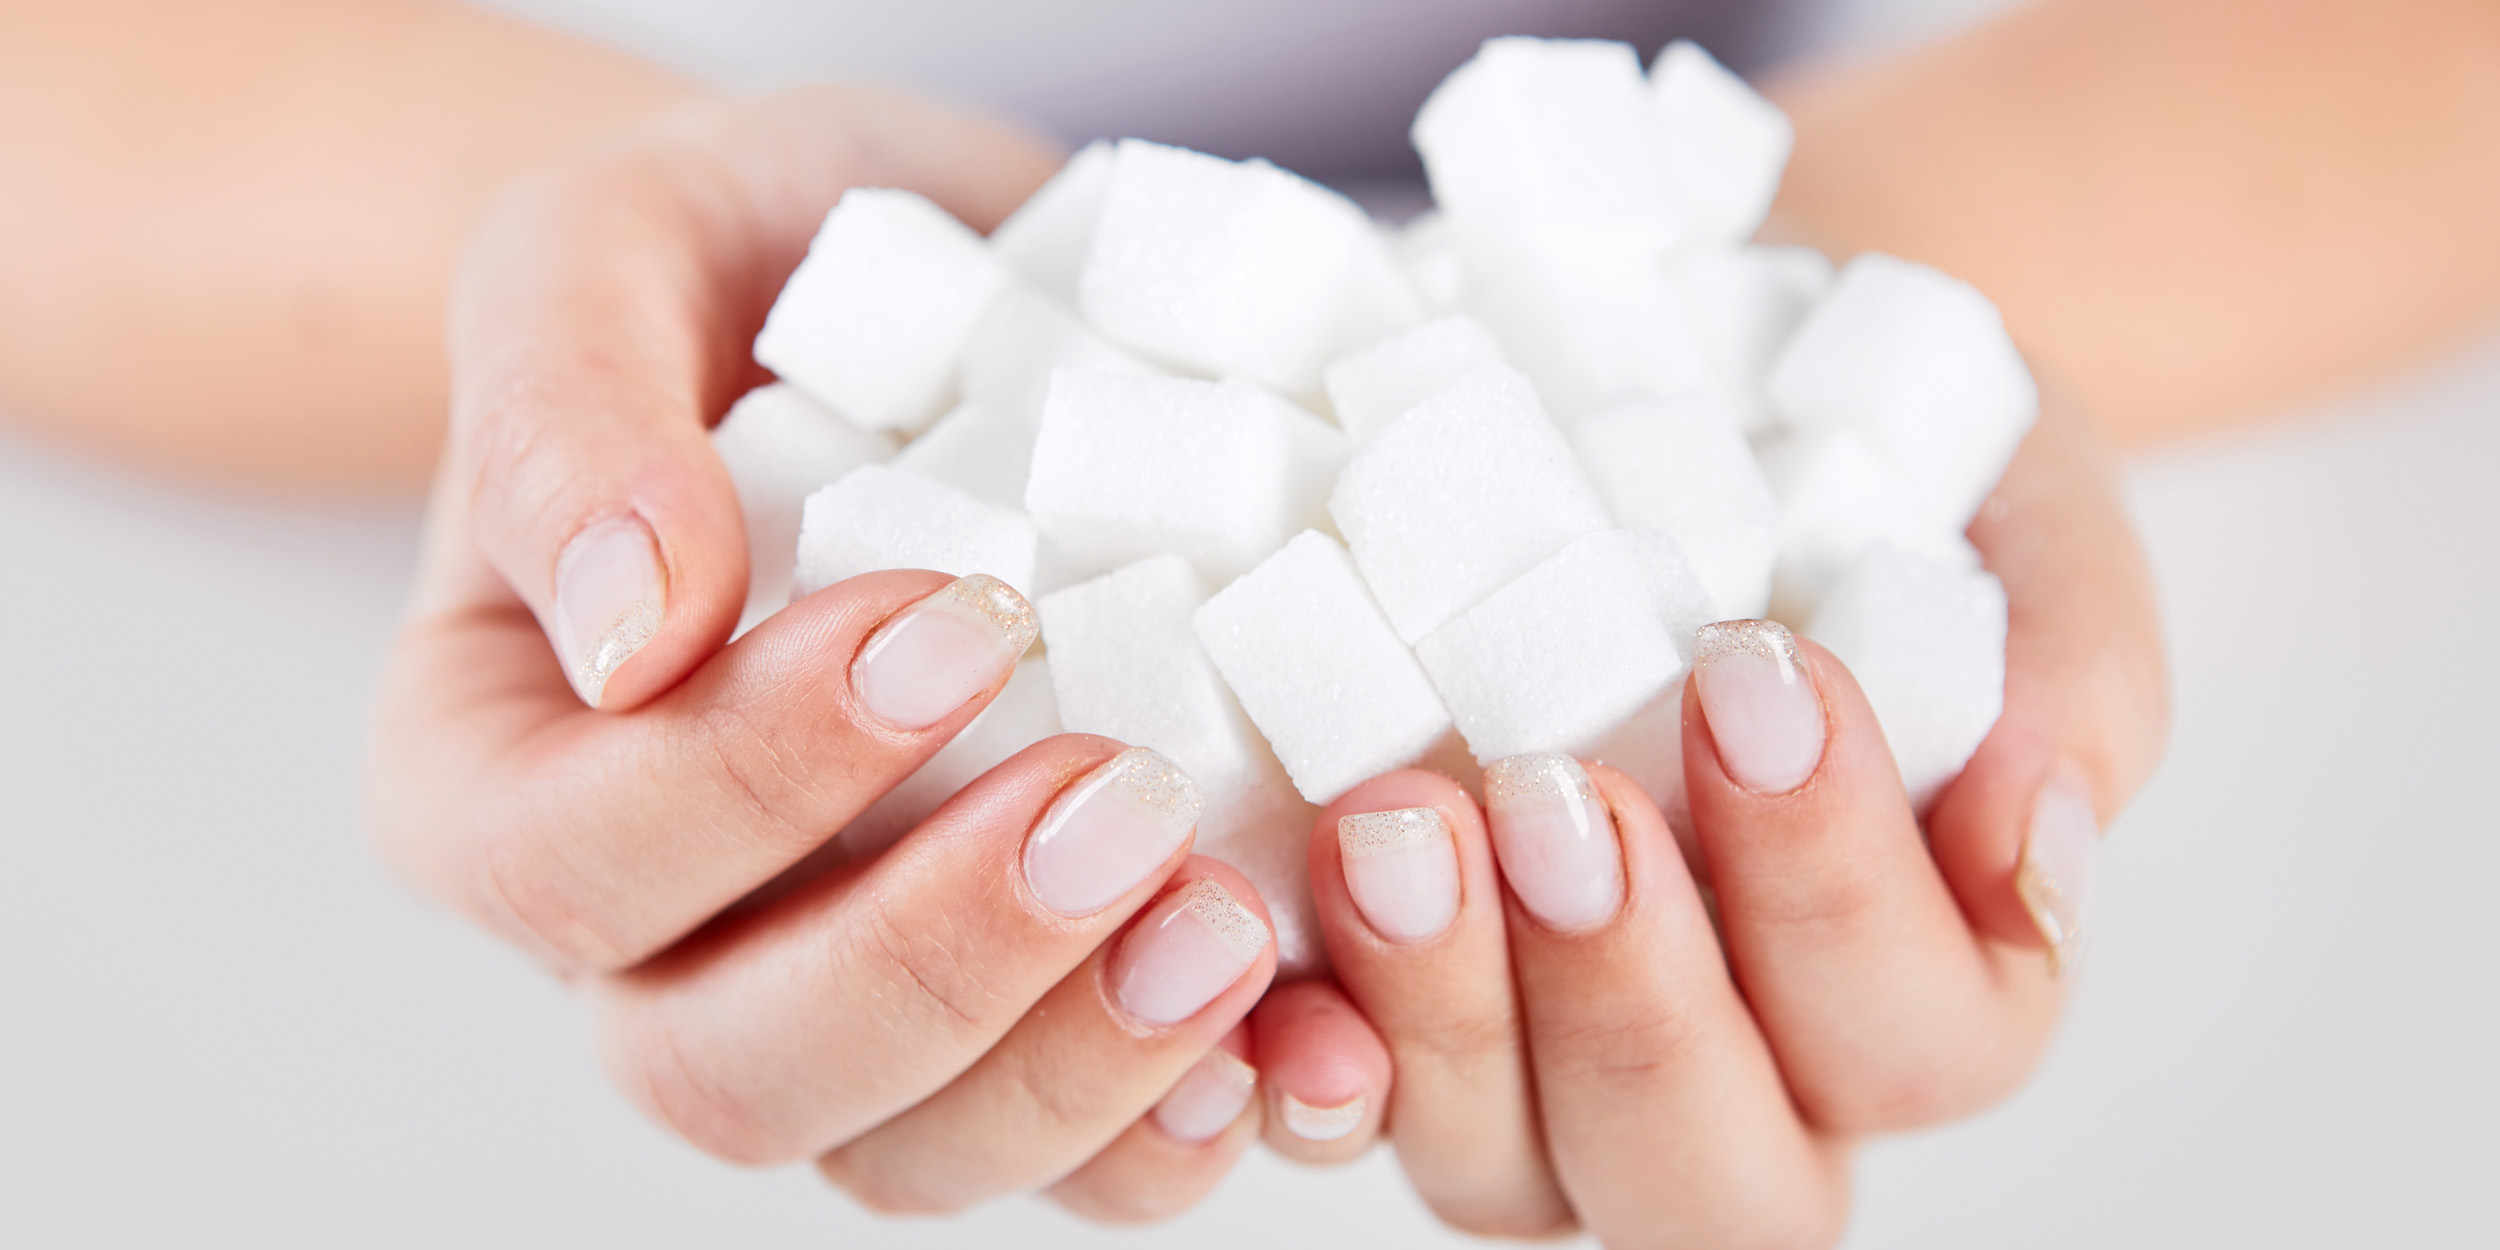 Сахарная зависимость - как избавиться. 5 простых шагов!